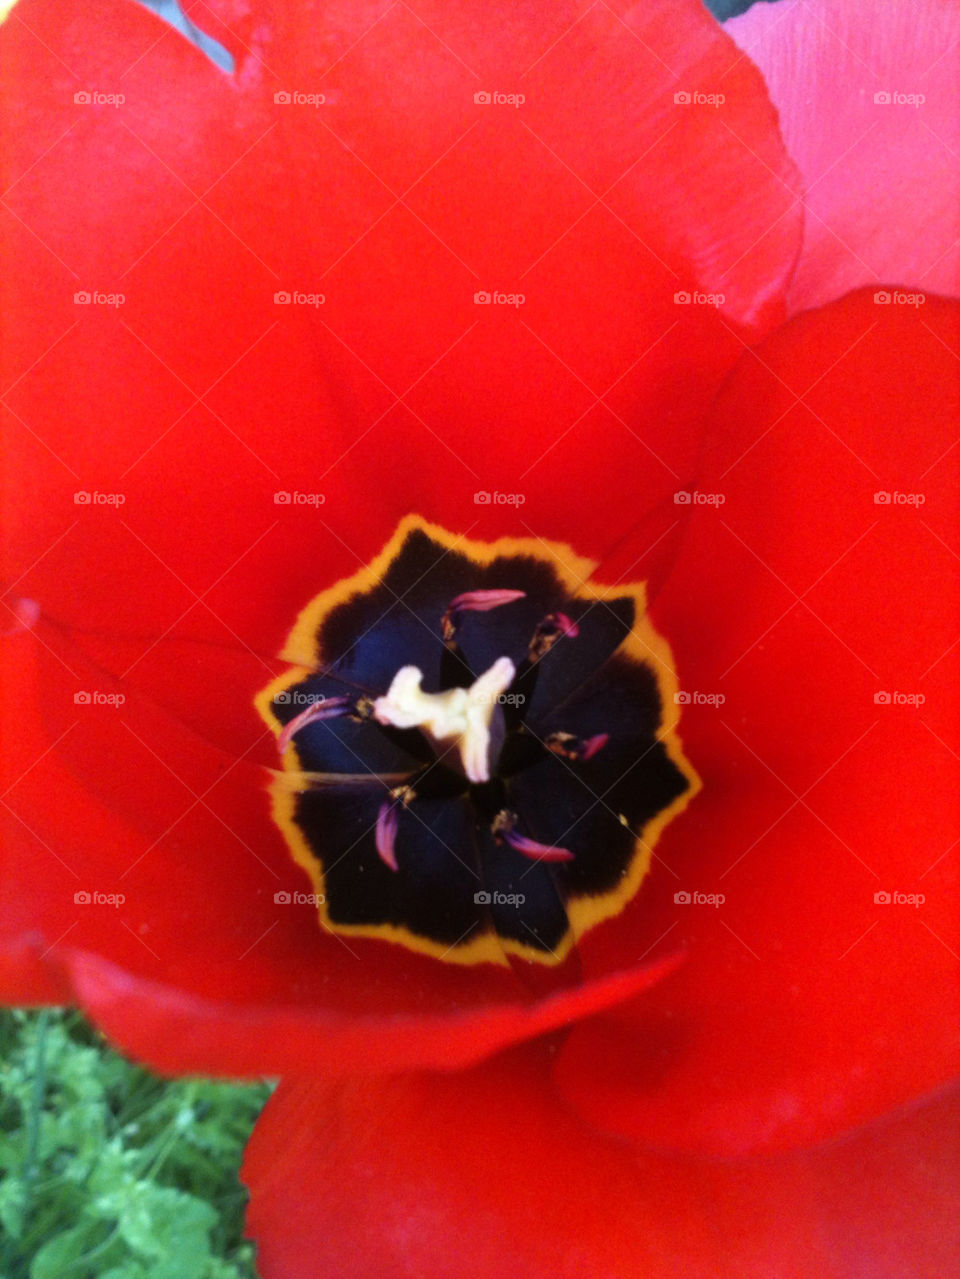 Close up of red tulip